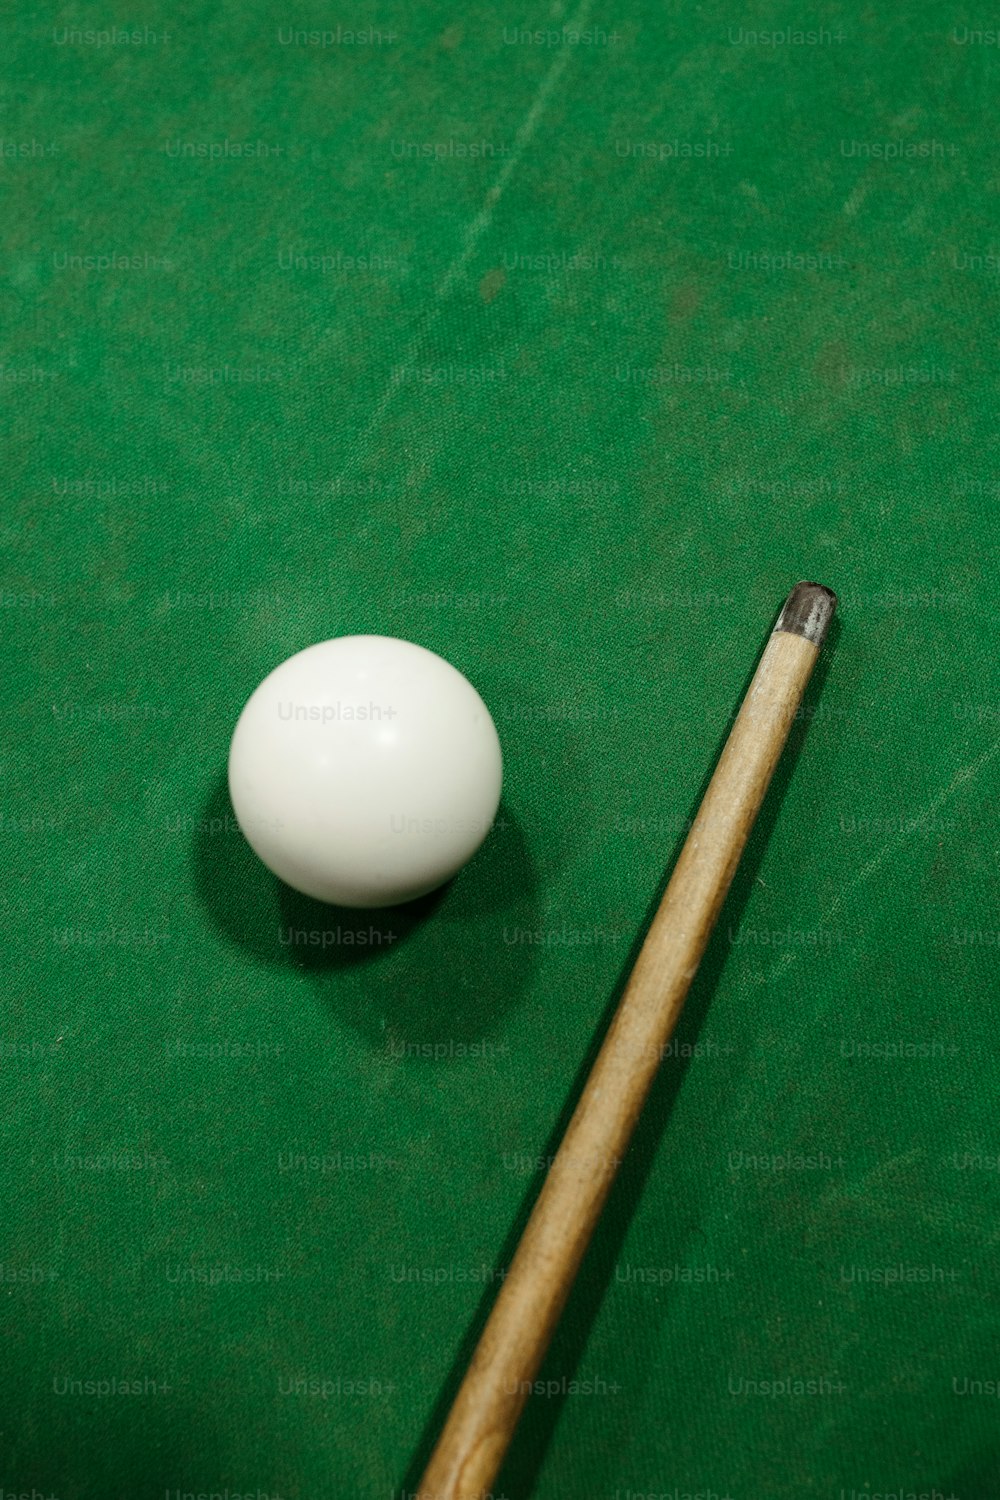 초록색 당구대에 놓인 당구장과 하얀 공